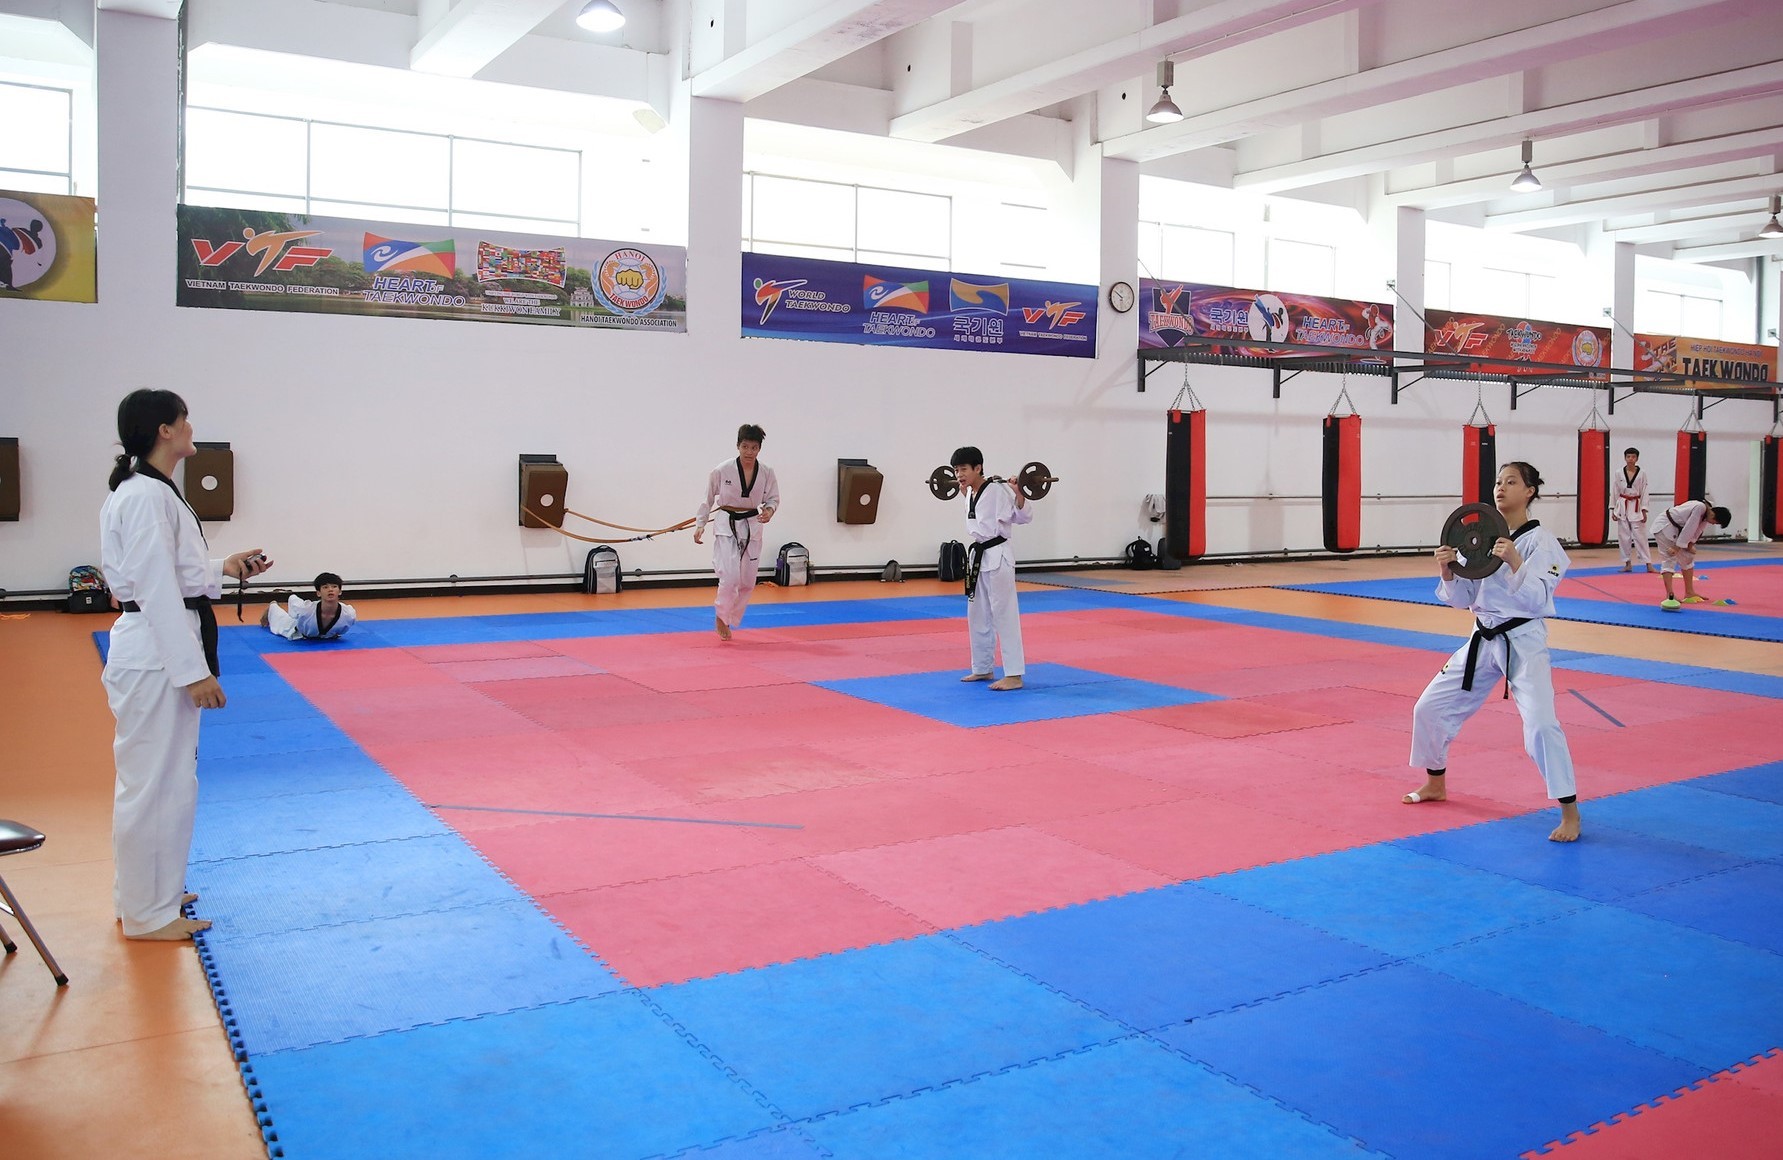 taekwondo-la-mot-trong-nhung-mon-duoc-nganh-the-thao-ha-noi-dau-tu-manh-trong-thoi-gian-toi-de-huong-den-san-choi-asiad-va-olympic-anh-nguyen-quang-1719712637.jpg